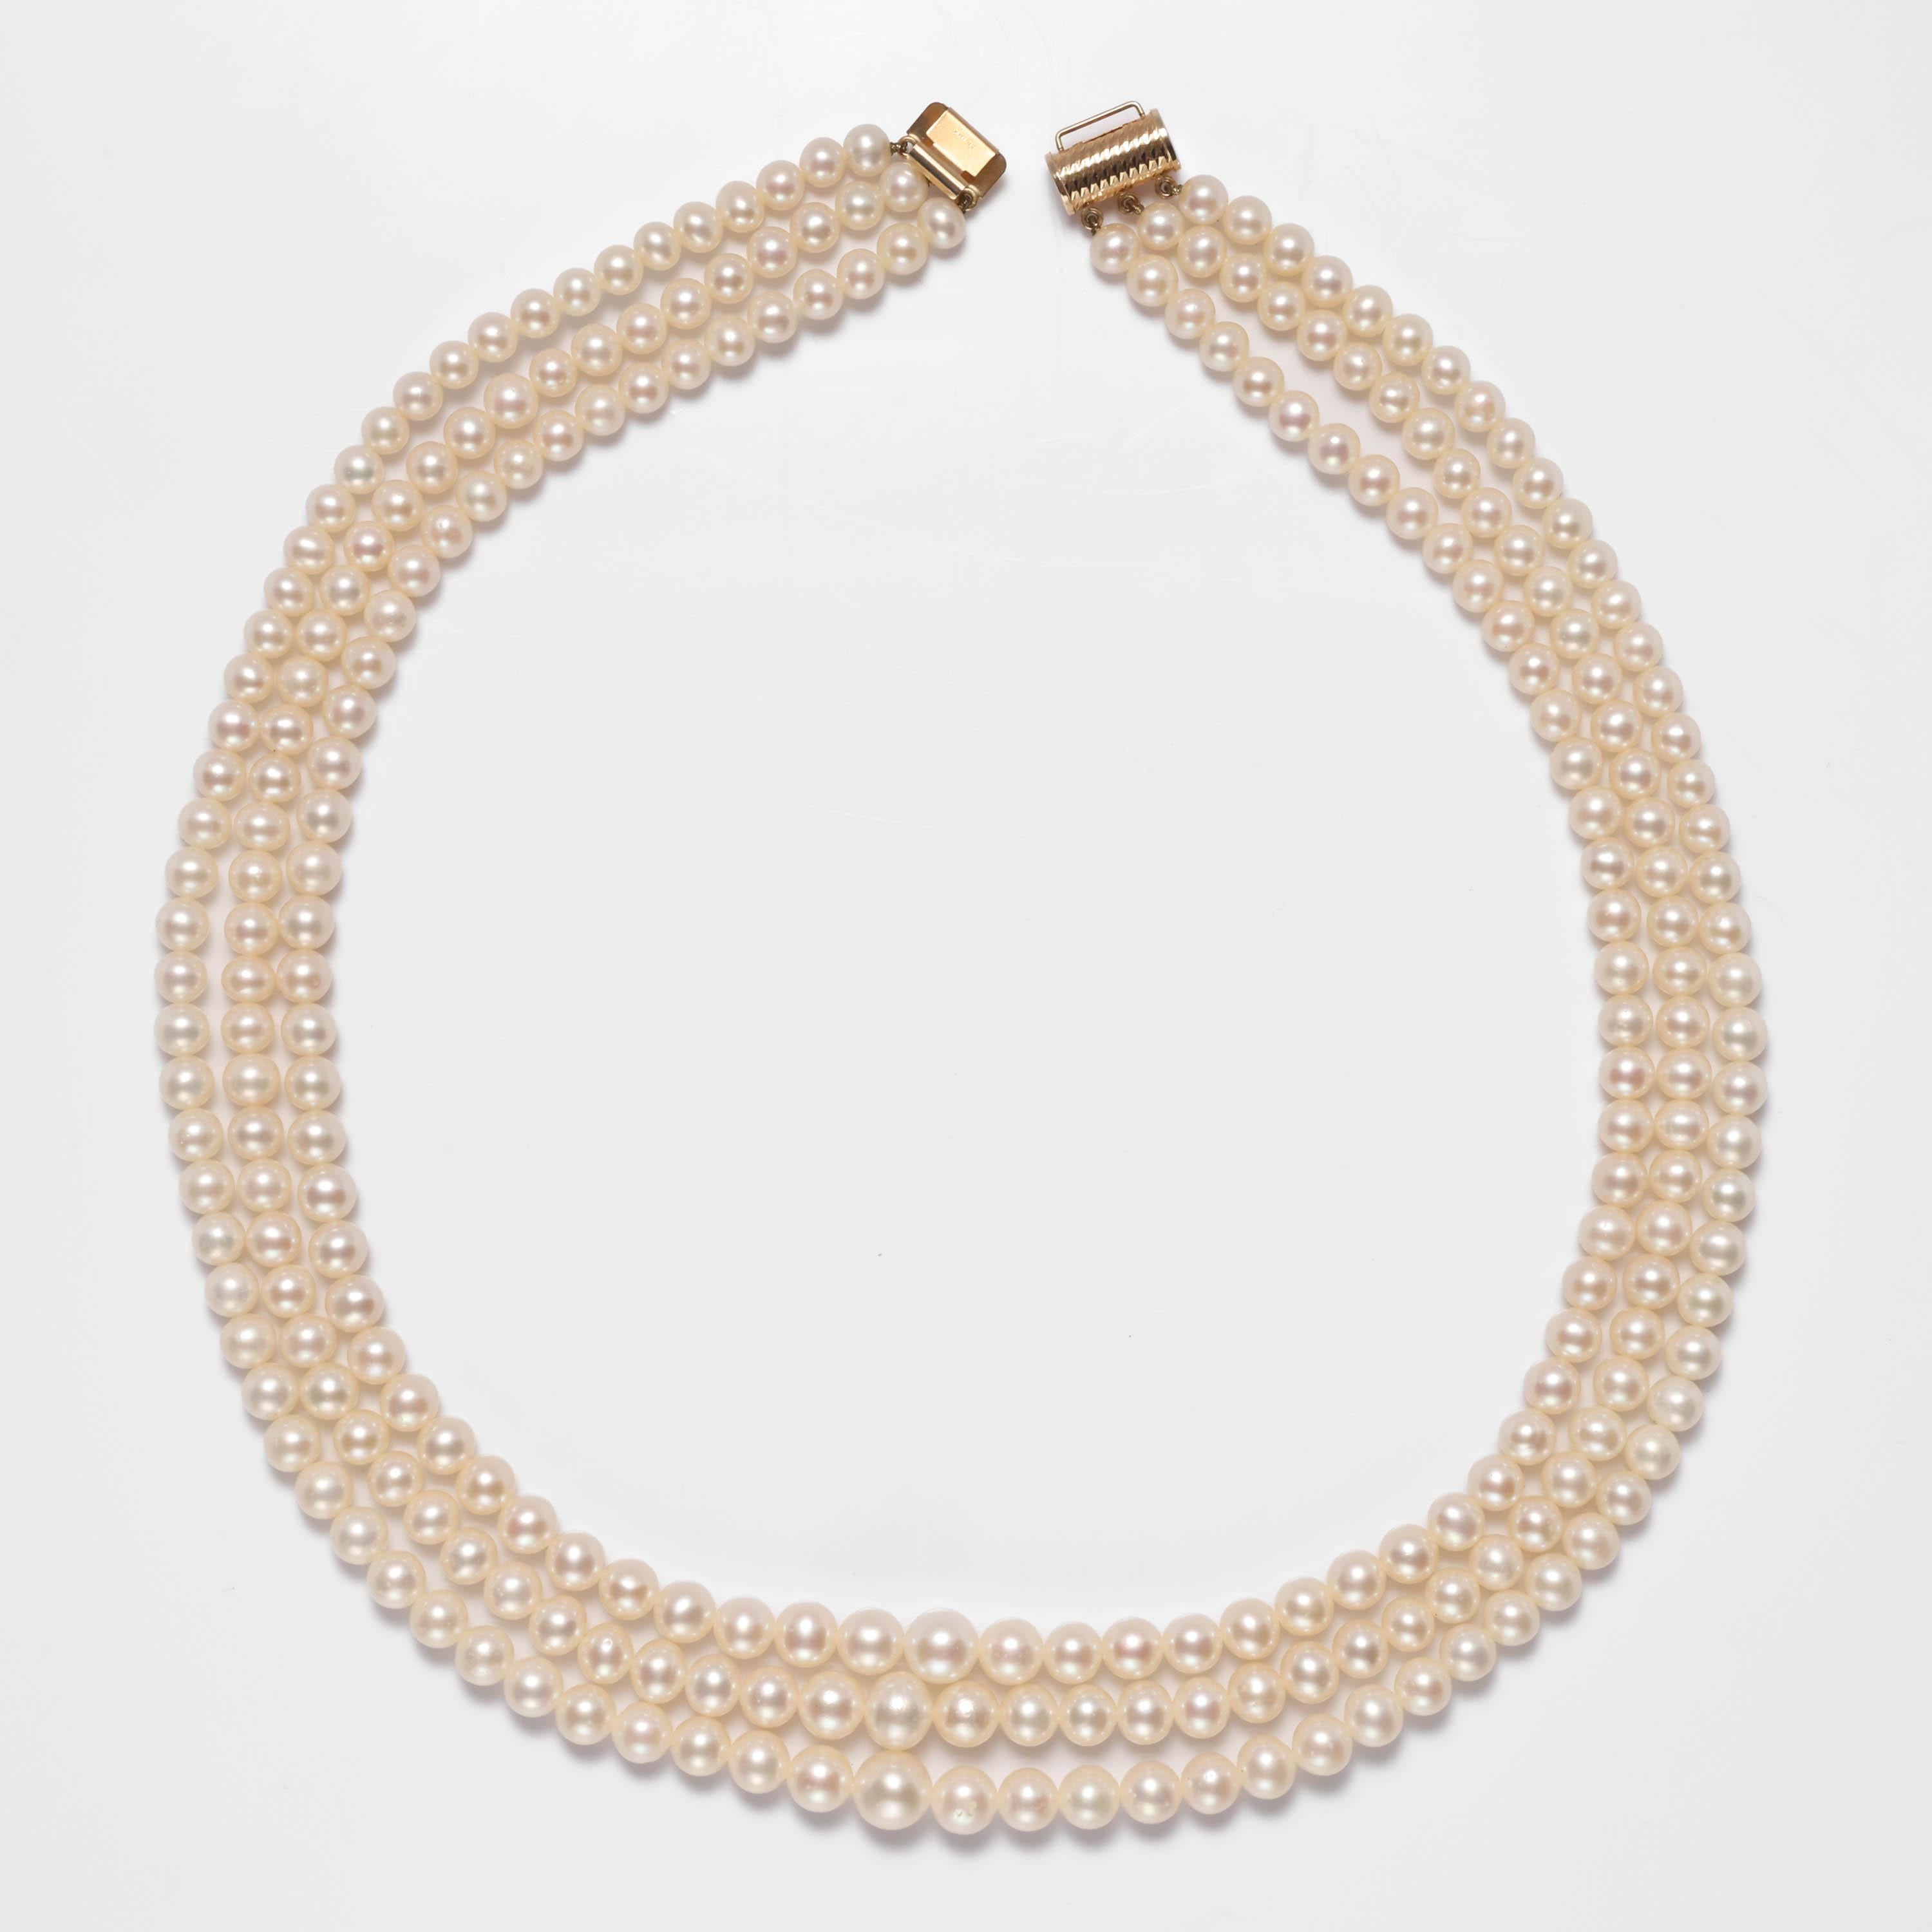 Ce collier à trois brins en perles de culture d'Akoya date du début glamour des années 1970. Pensez-y : Lauren Hutton, Halston, Studio 54. 

Le collier est entièrement original et en parfait état. Les perles de culture Akoya brillantes et lustrées